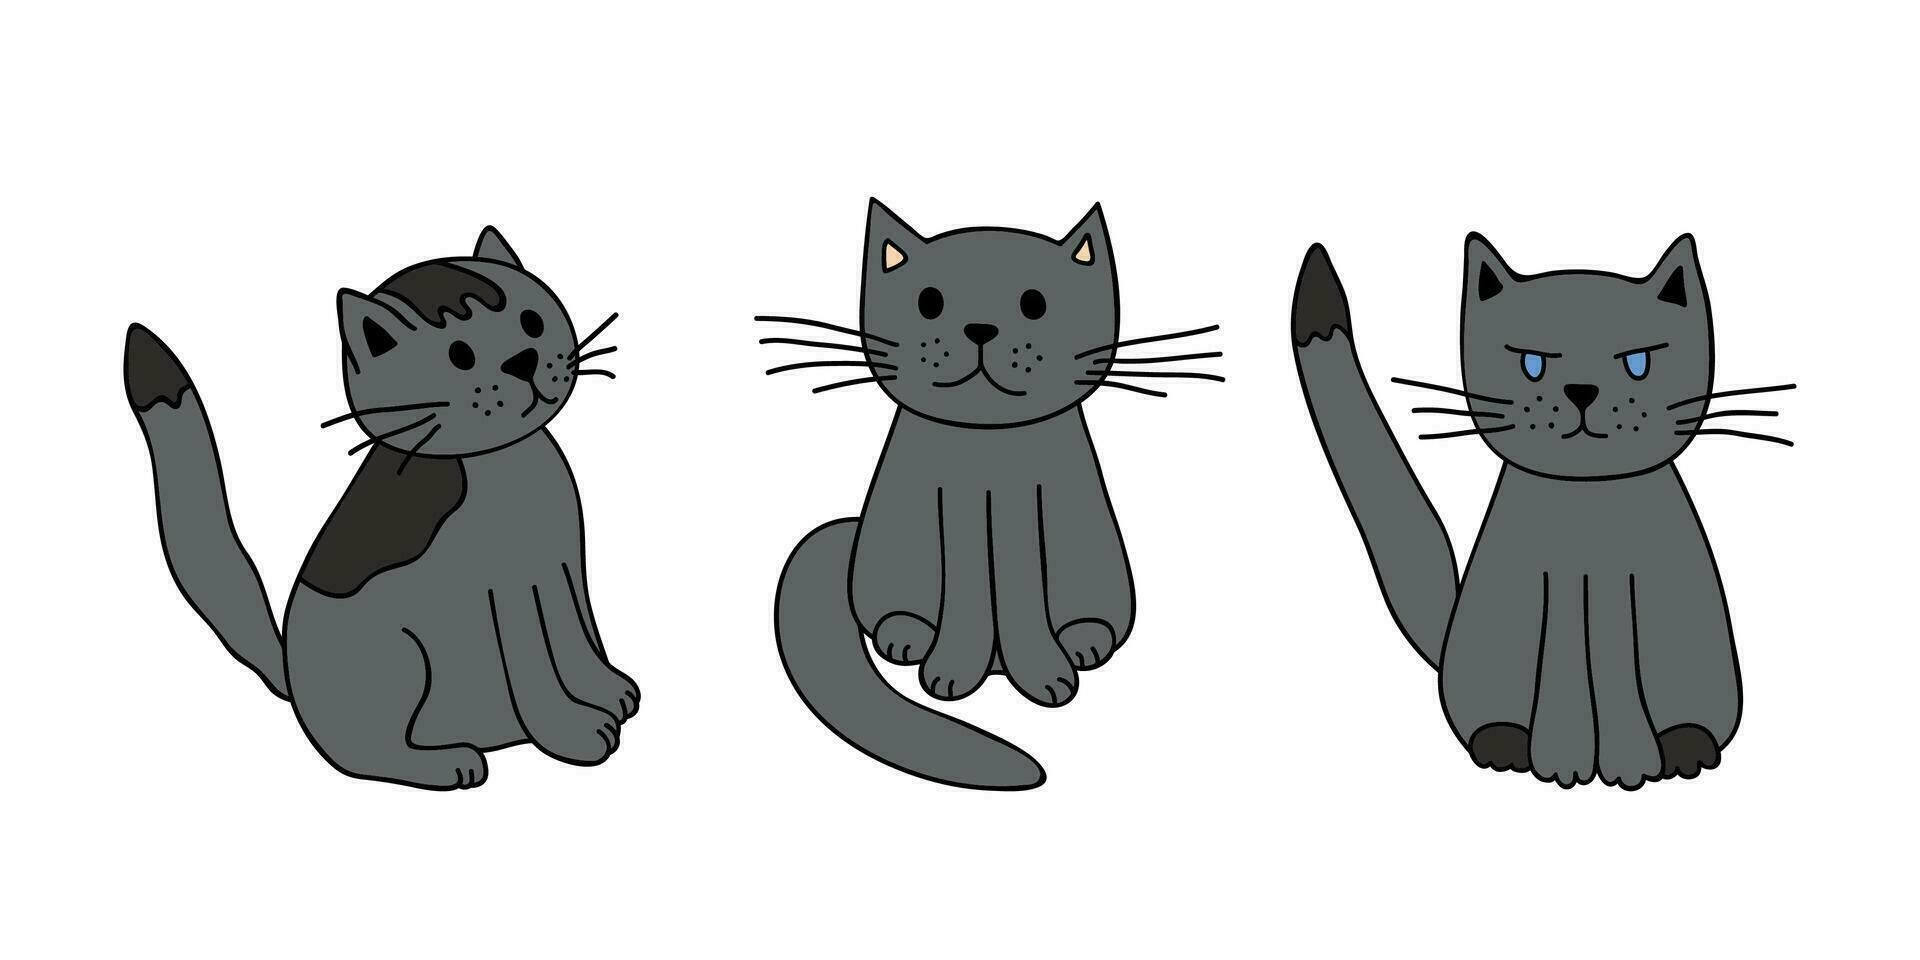 Hand drawn cat clipart. Cute pet doodle set vector